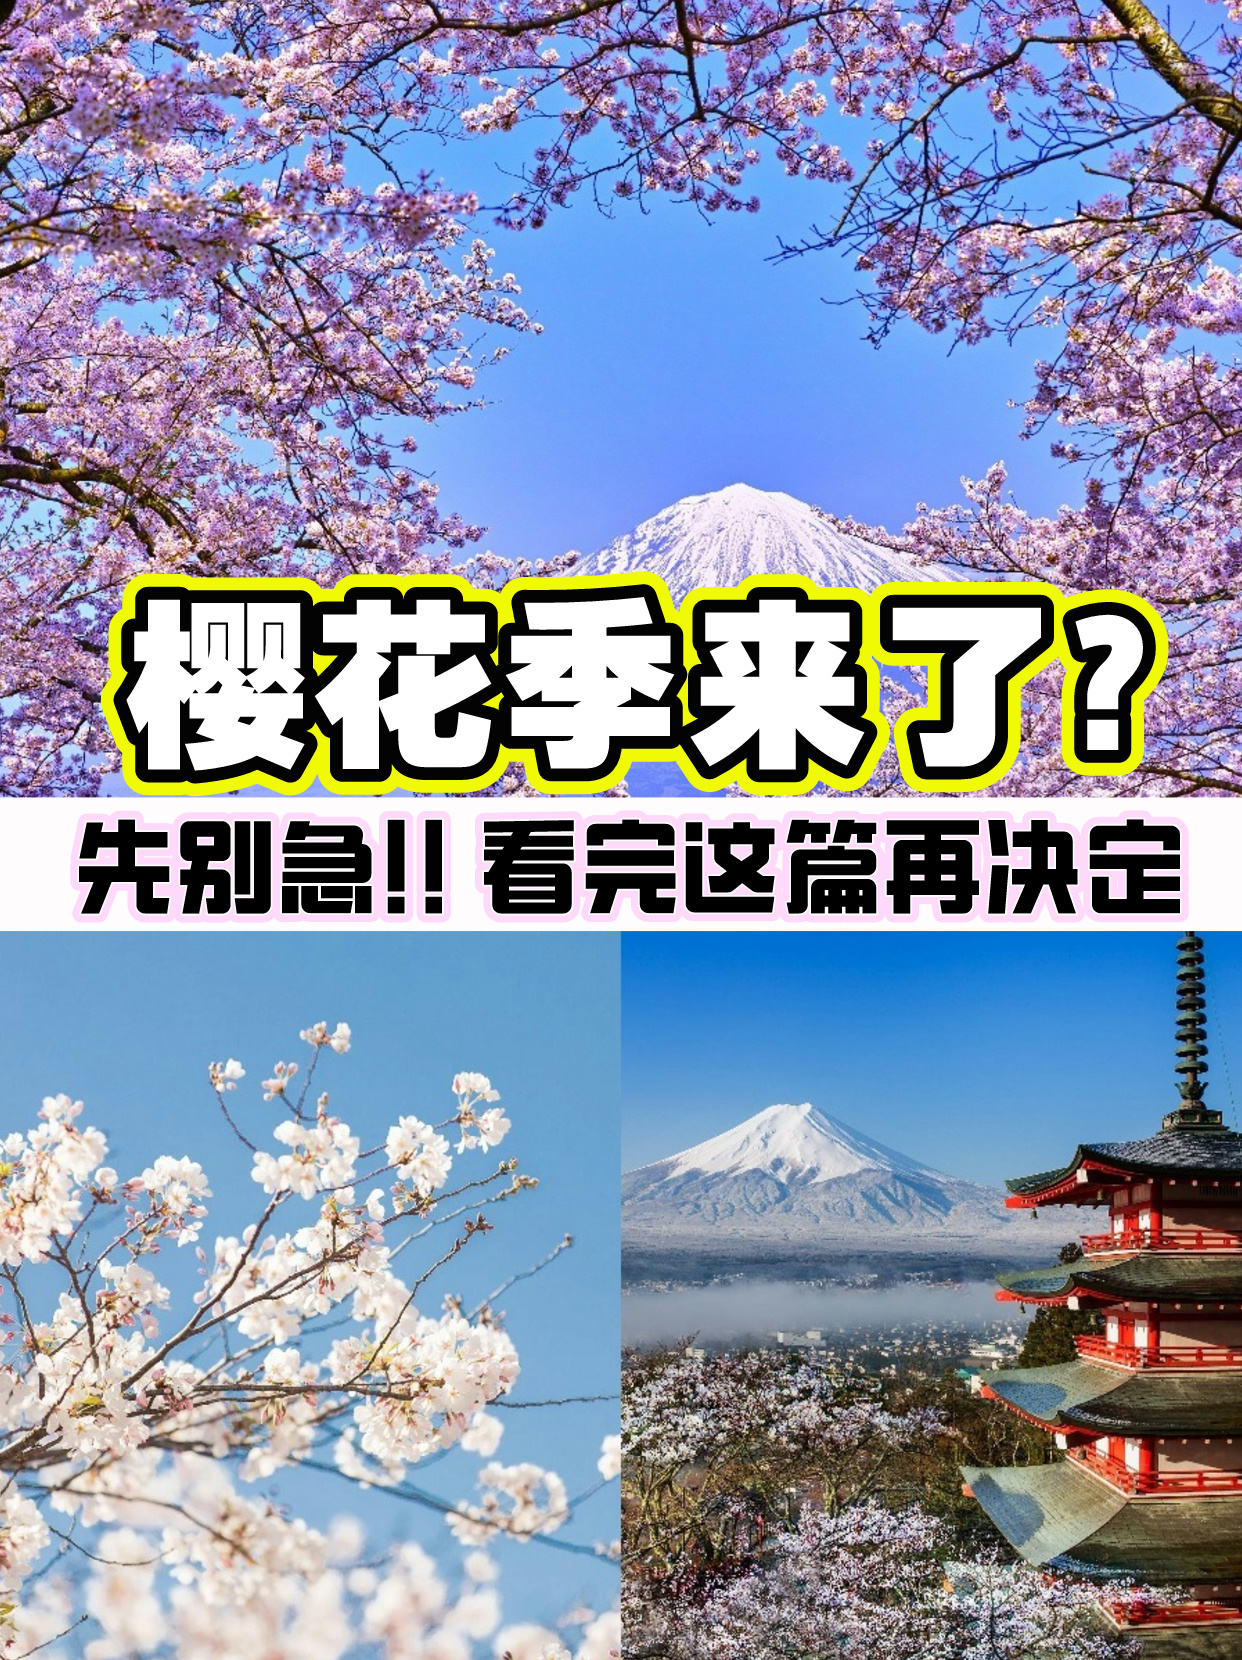 🌸去日本看樱花❓先别急❗看完这篇再决定